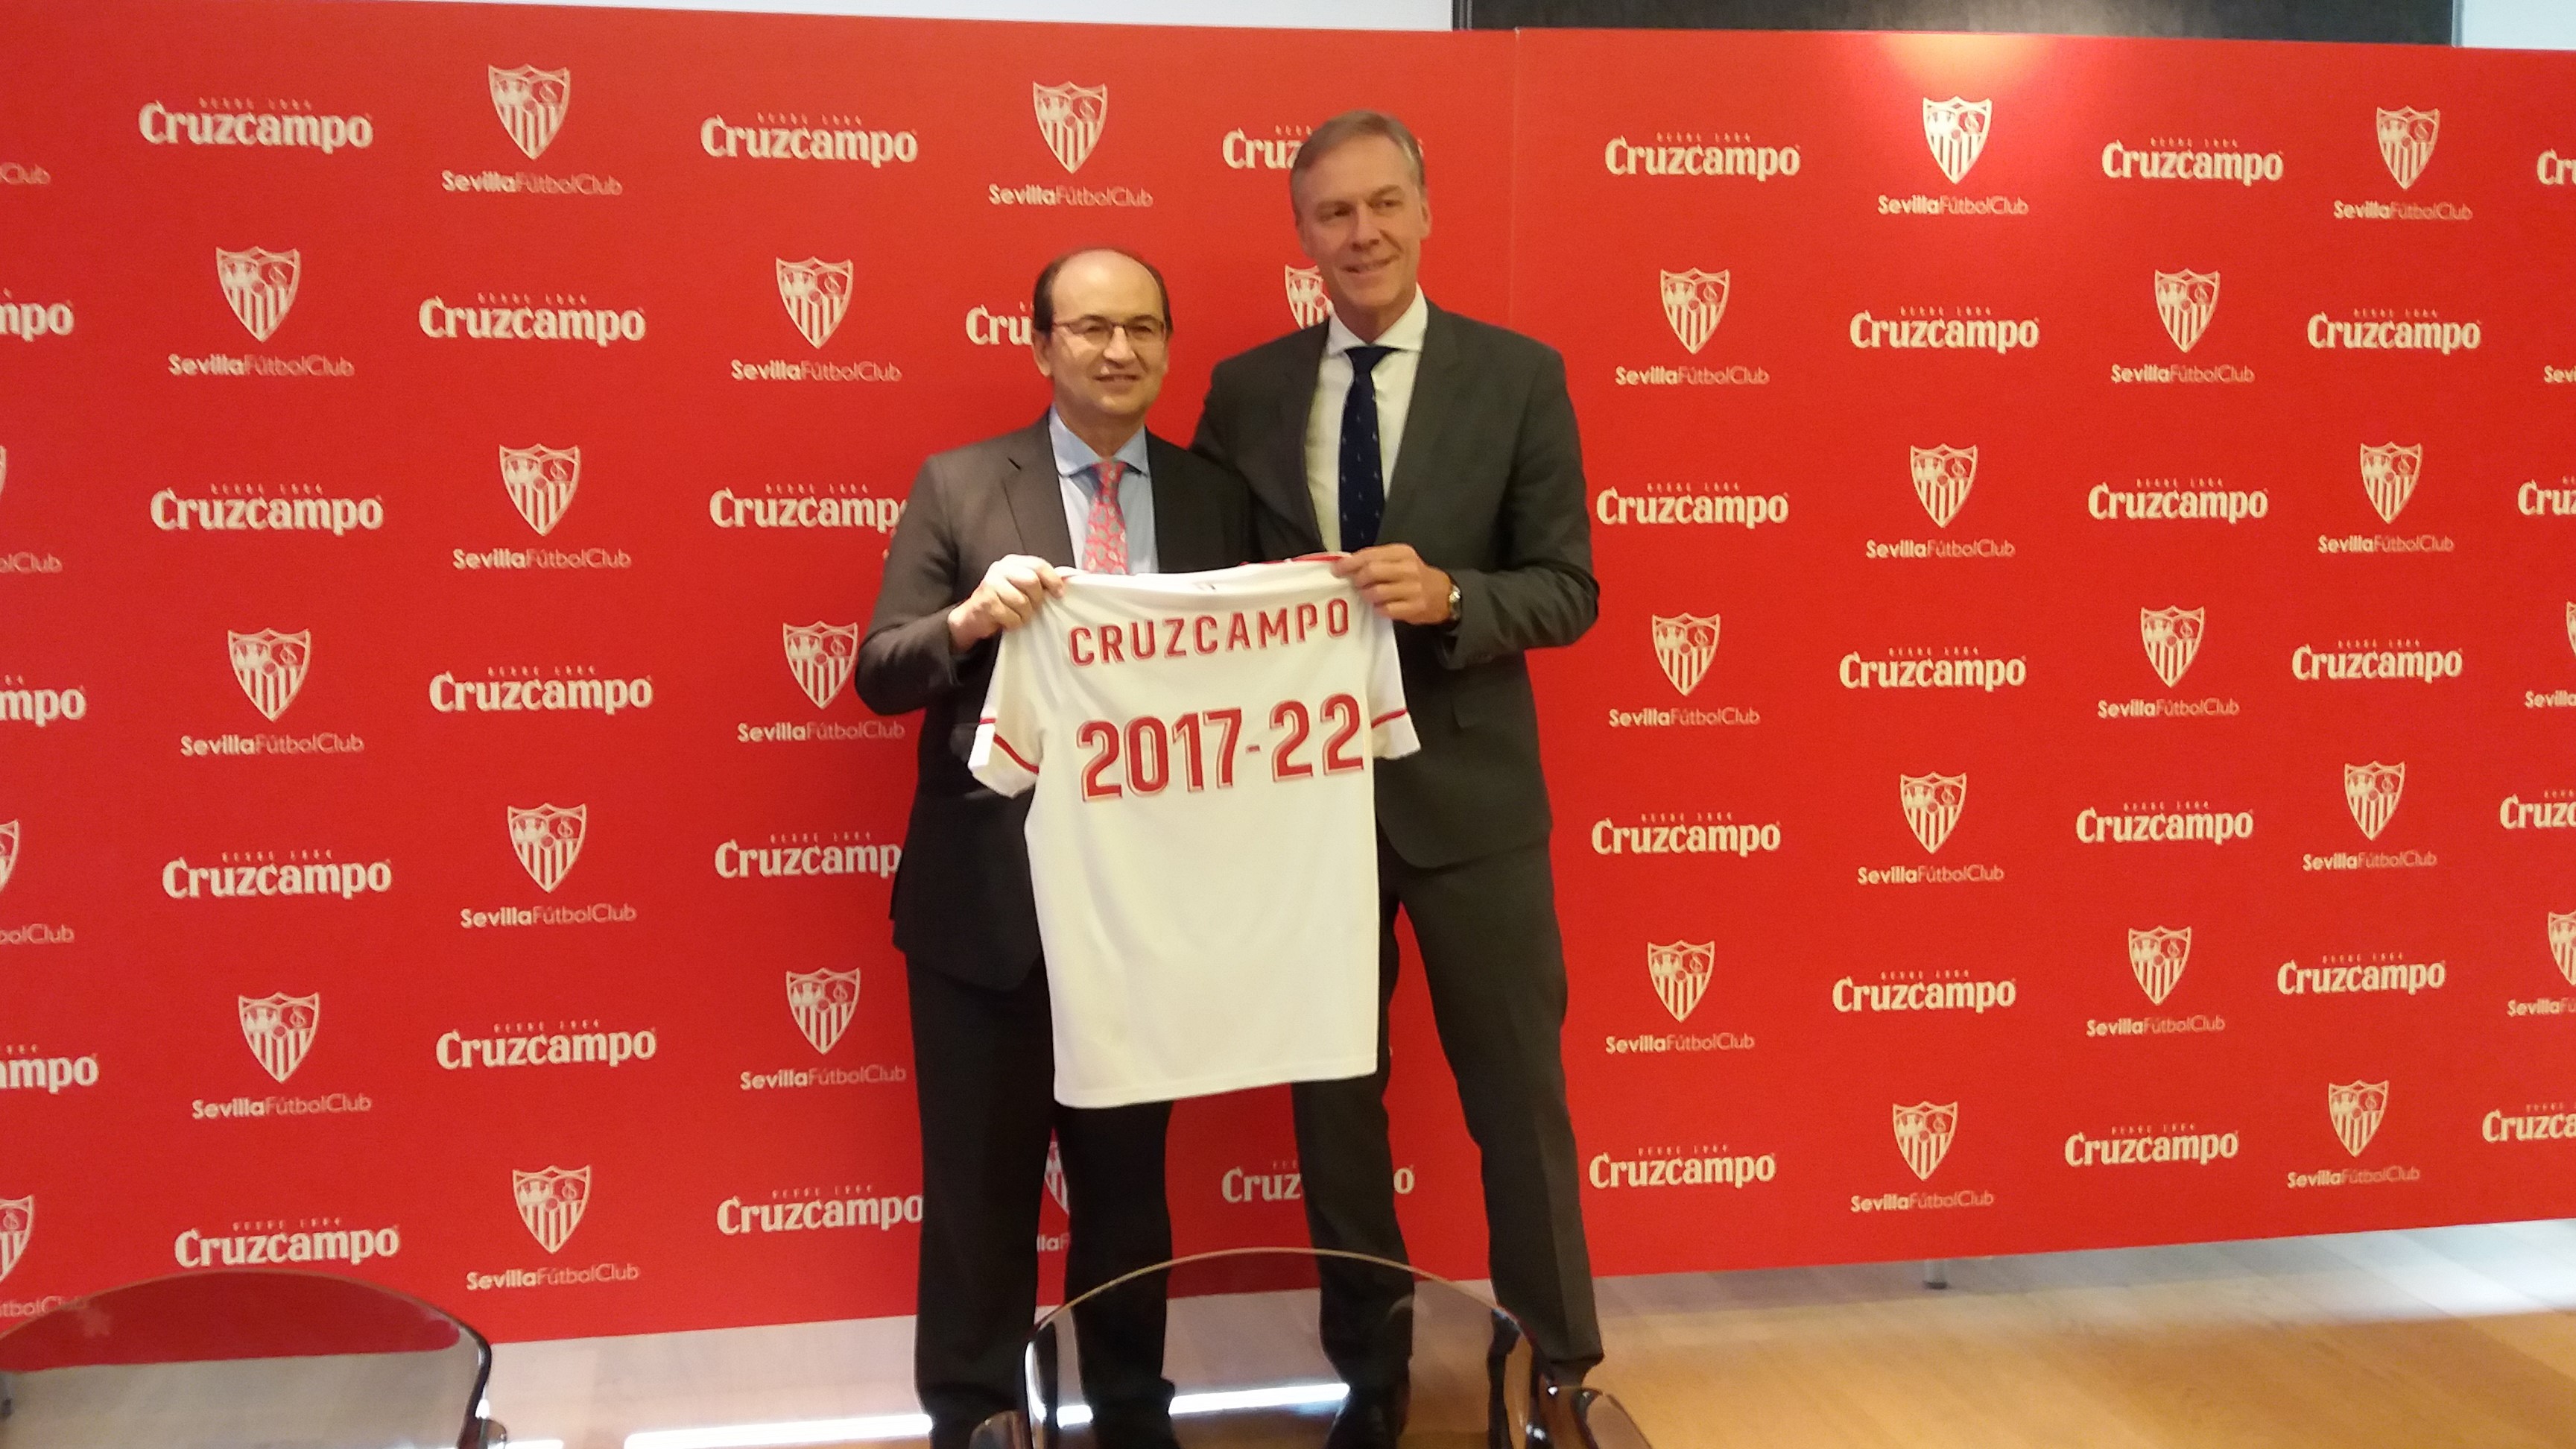 Los presidentes del Sevilla FC y de Heineken España, a la que pertenece Cruzcampo, posan con una camseta con la duración del acuerdo 